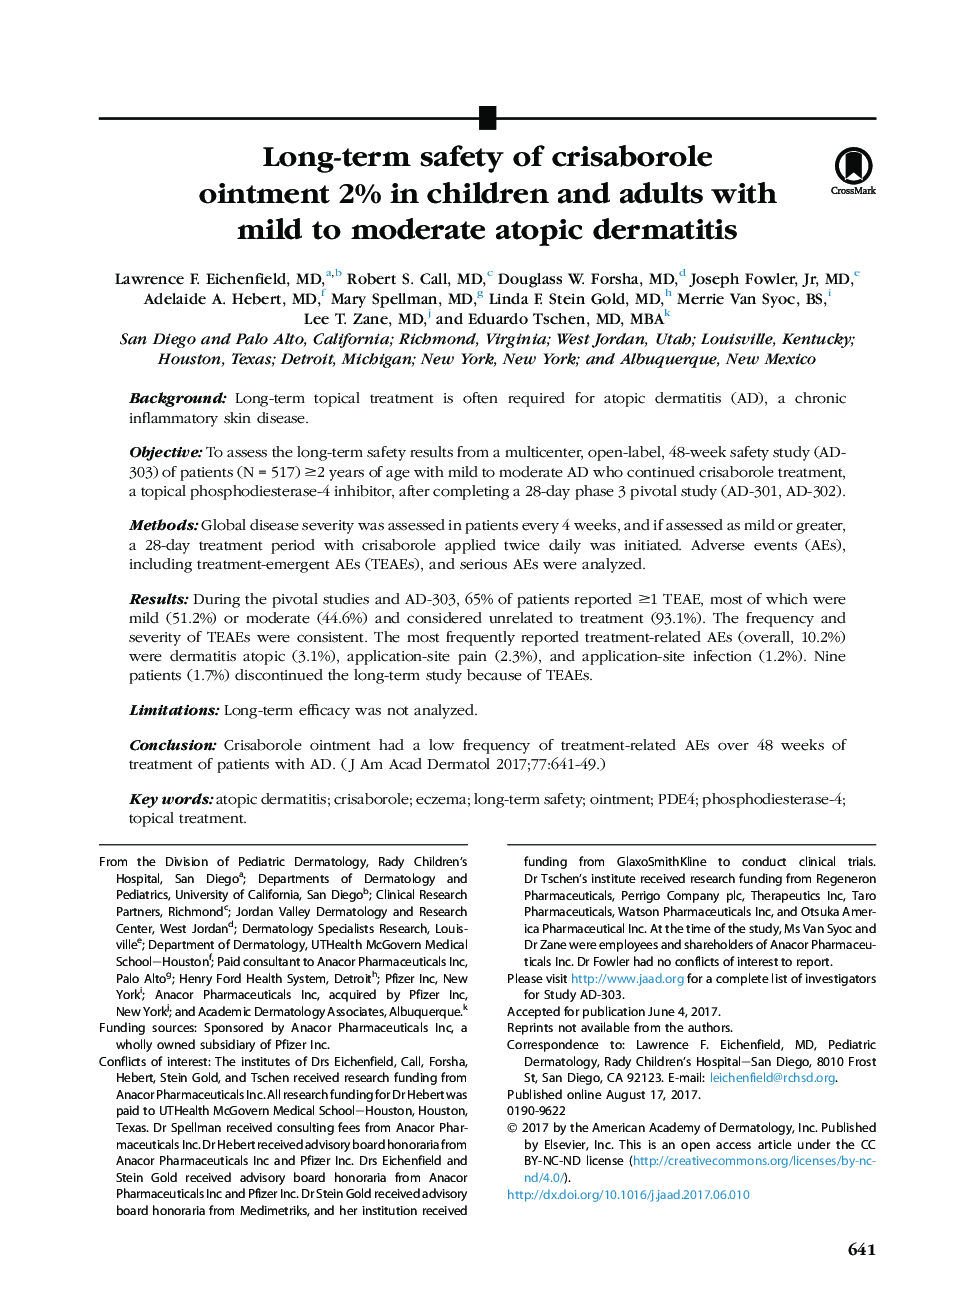 ایمنی درازمدت پماد کراتوورول 2٪ در کودکان و بزرگسالان مبتلا به درماتیت آتوپیک ملایم و متوسط 